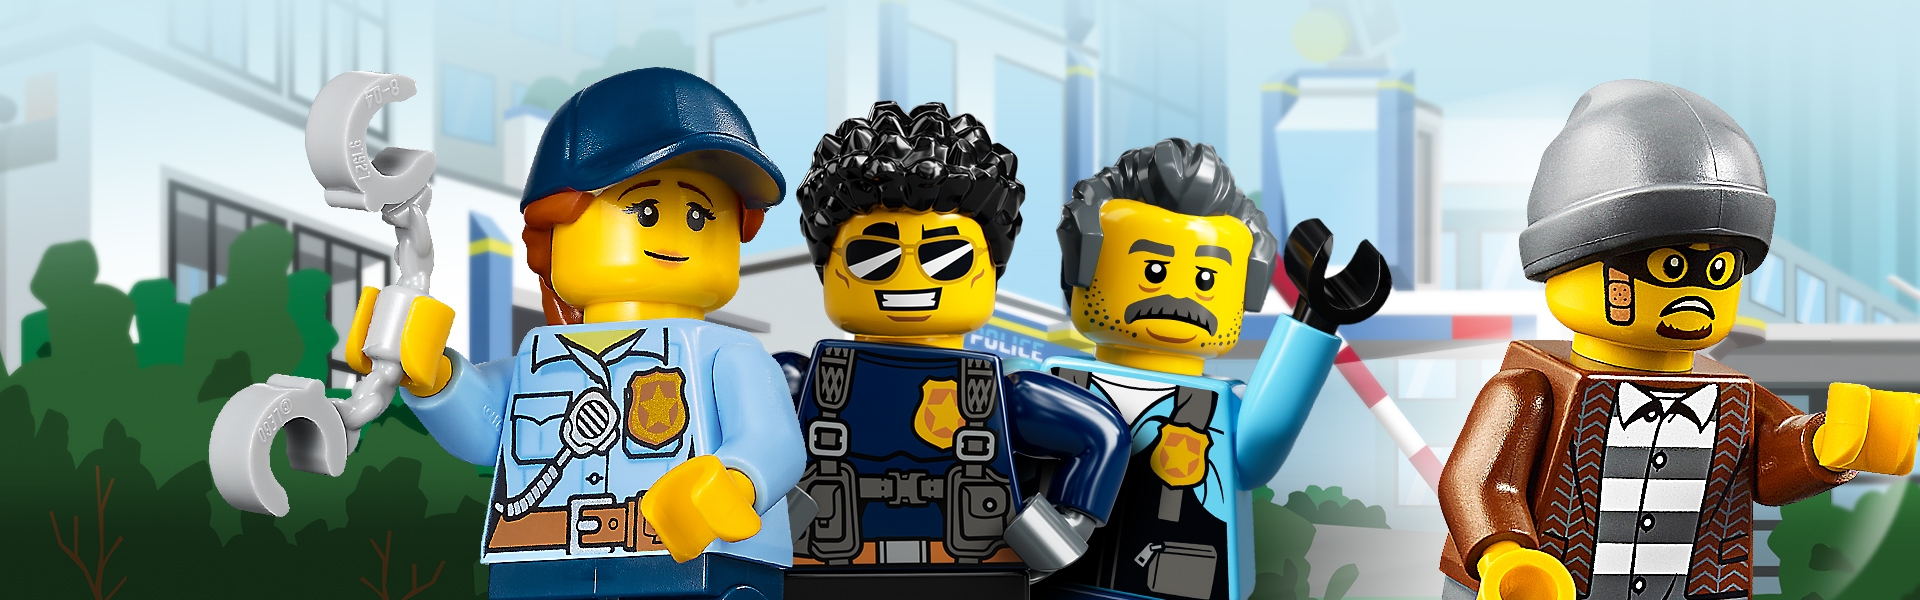 Cop Type 6 NEW Lego City Policemen